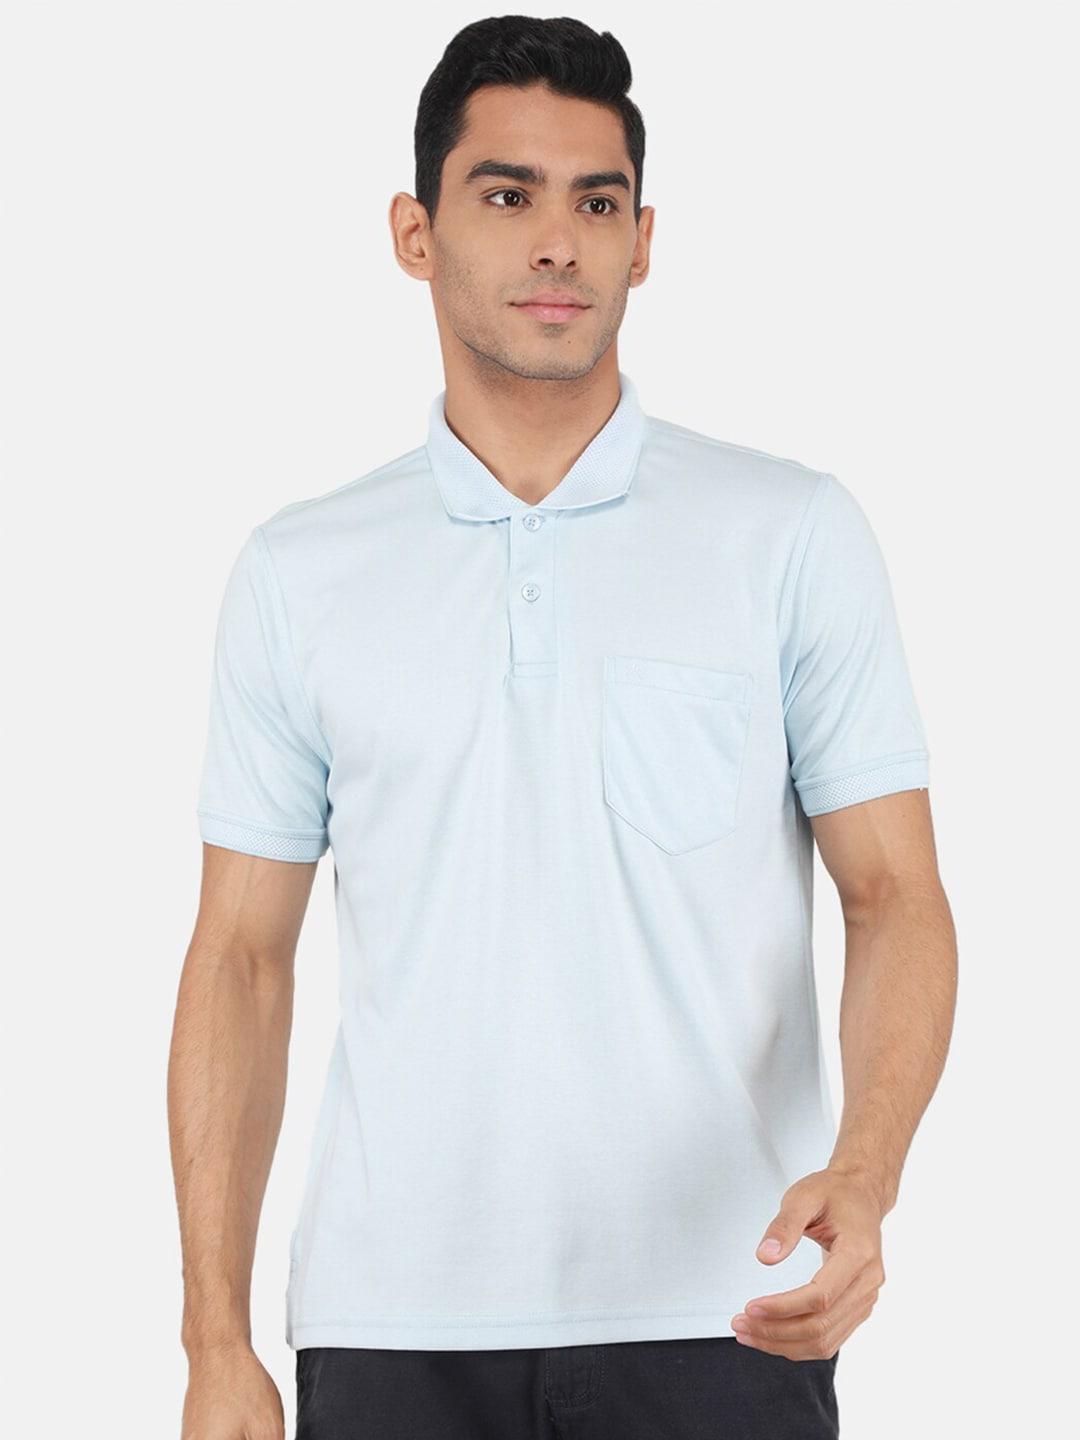 Monte Carlo Polo Collar Short Sleeves T-shirt